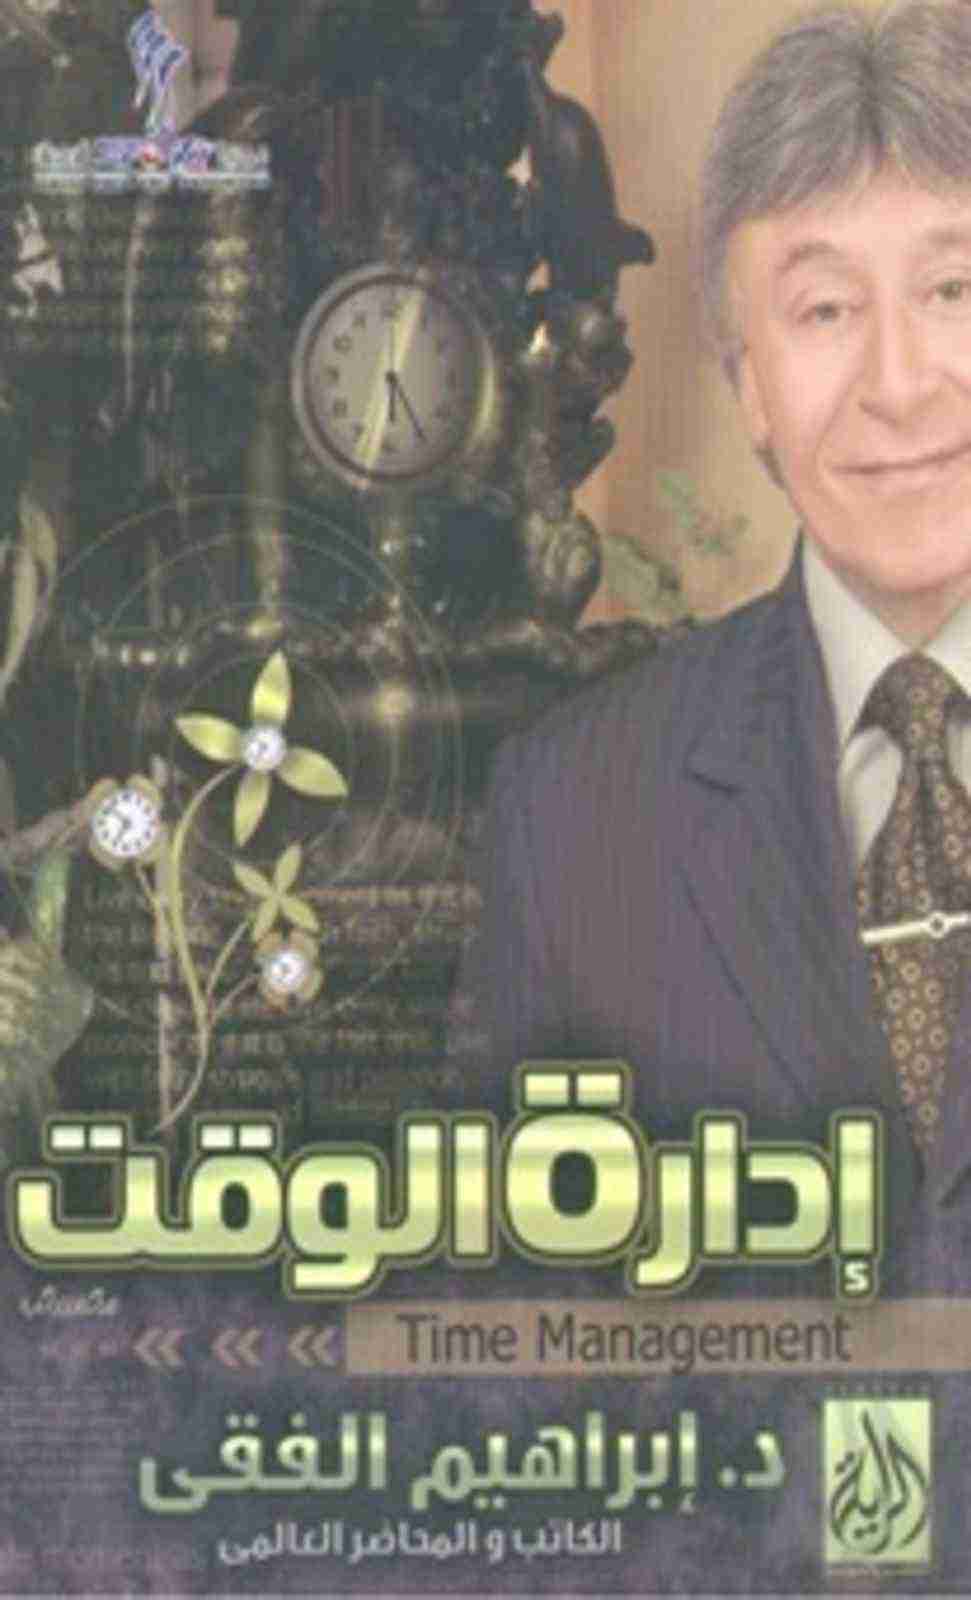 كتاب إدارة الوقت لـ إبراهيم الفقي